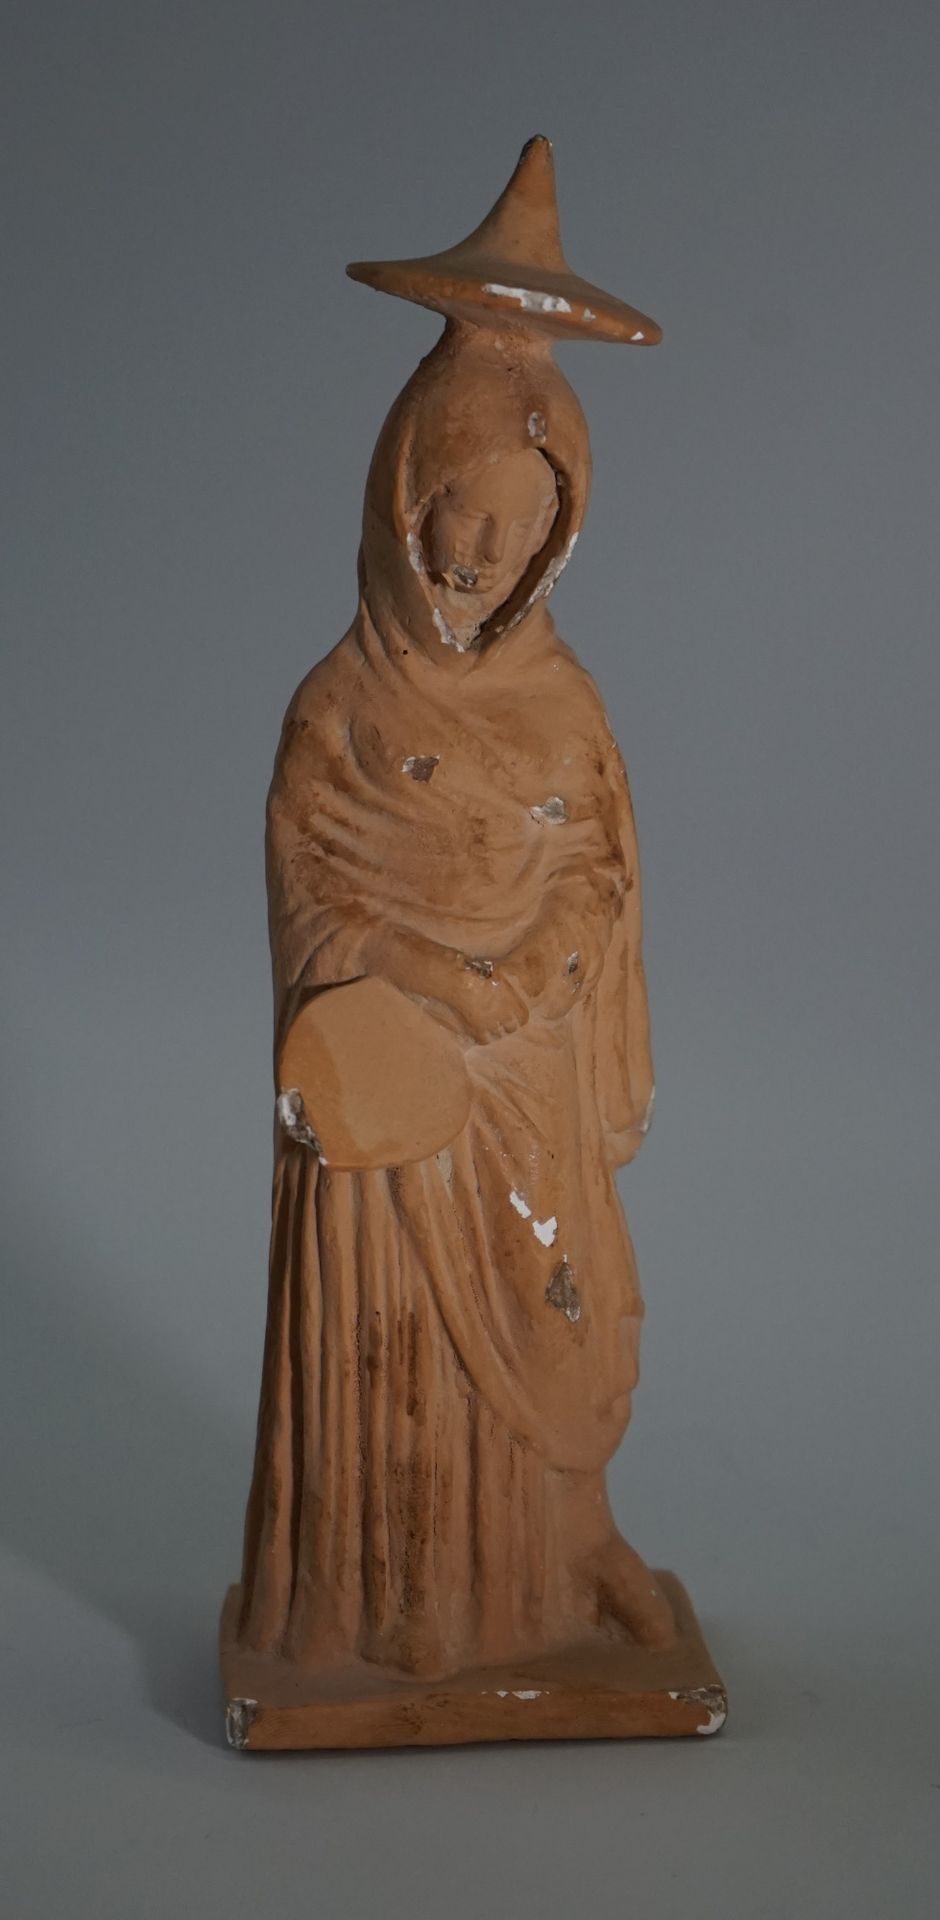 Null 代表一个披头散发的女人的雕像。

希腊风格的作品

高：20厘米